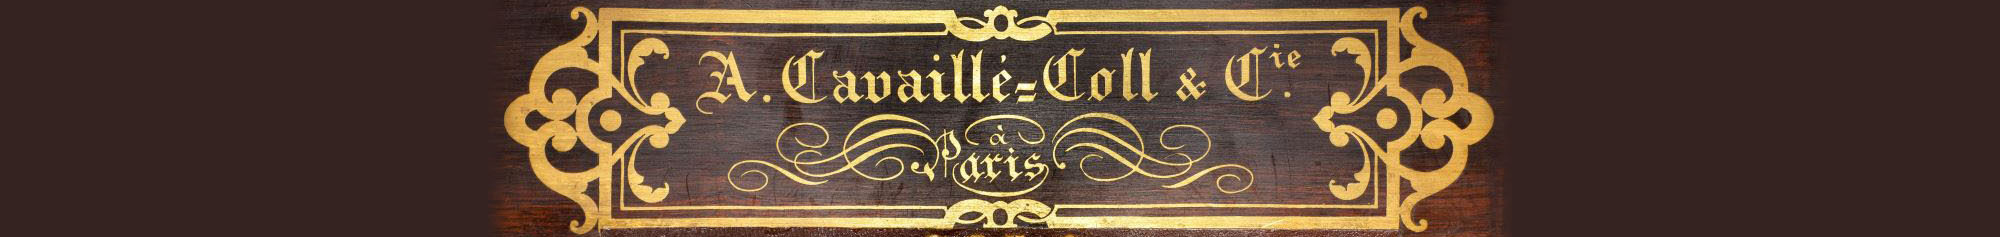 Association pour le rayonnement des orgues Aristide Cavaillé-Coll de l’église Saint-Sulpice (Paris)